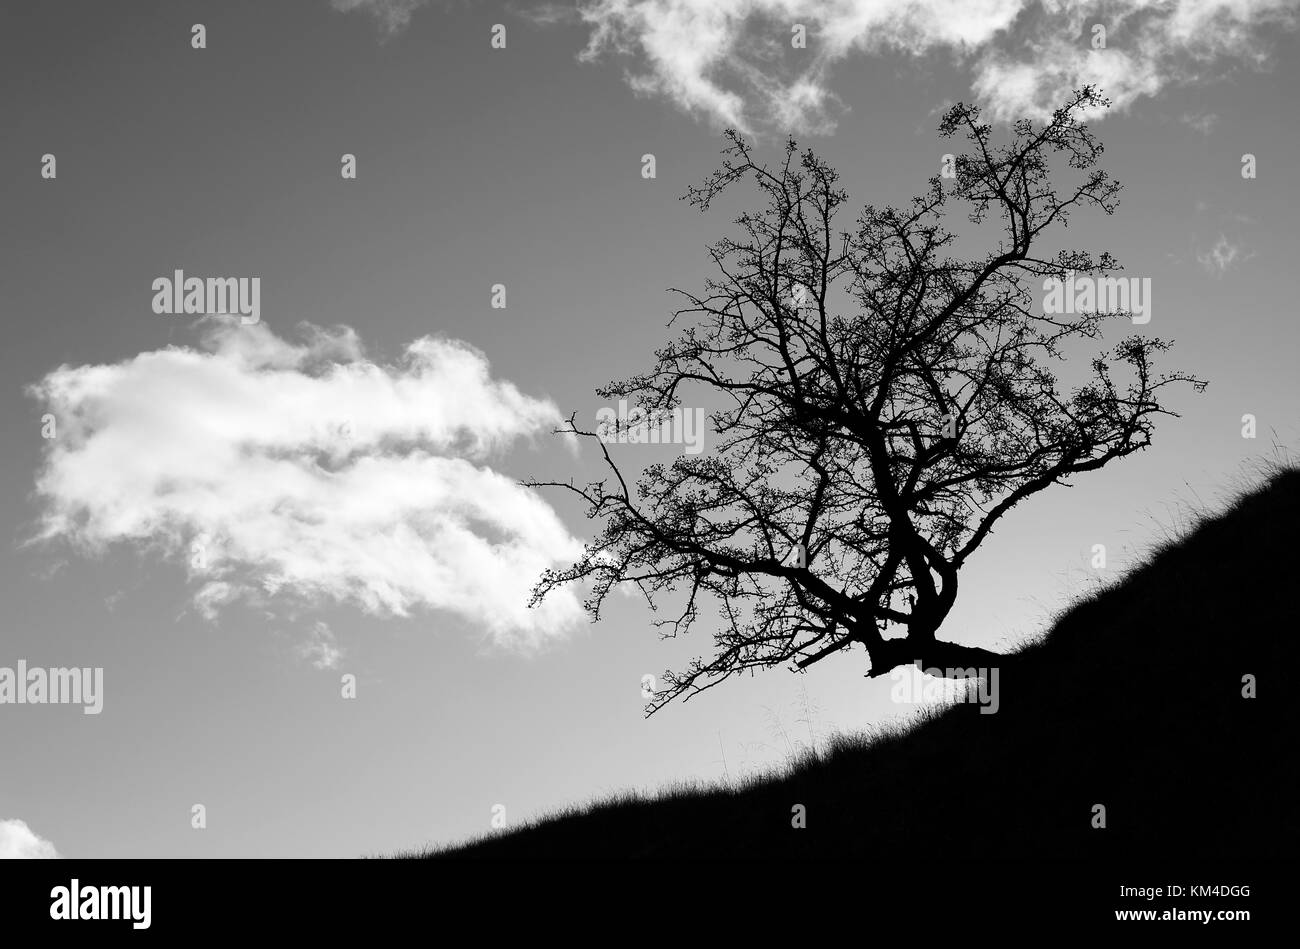 Weißdornbaum, Crataegus monogyna, auf einem Hügel, der eine dramatische Silhouette erzeugt, der anfängliche Effekt ist auf die Belichtung der Kamera für den helleren Hintergrund zurückzuführen Stockfoto